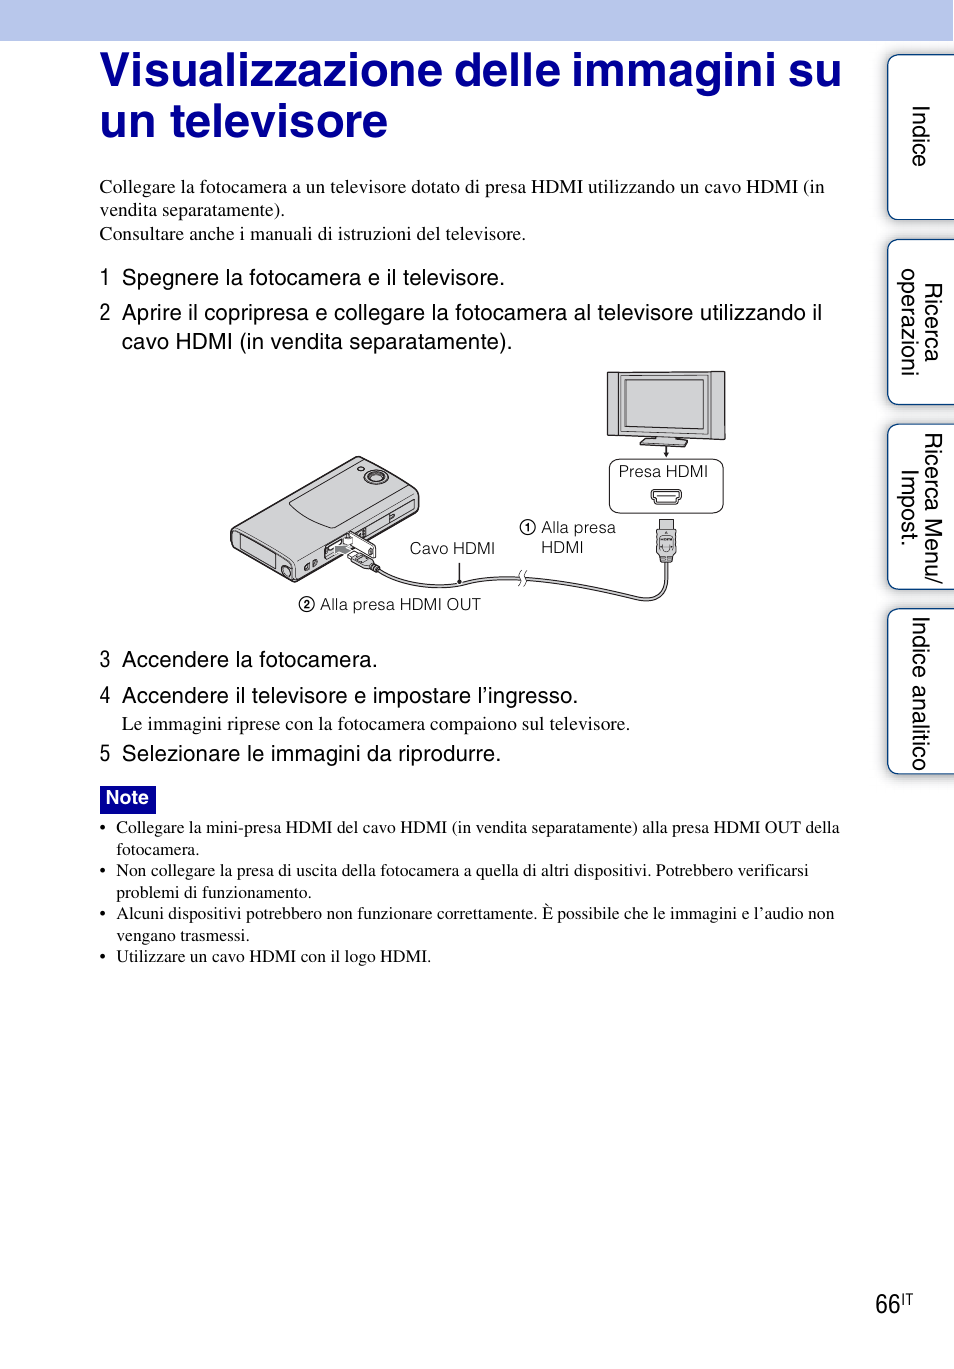 Visualizzazione delle immagini su un televisore, Out (66) | Sony bloggie MHS-FS1 Manuale d'uso | Pagina 66 / 80